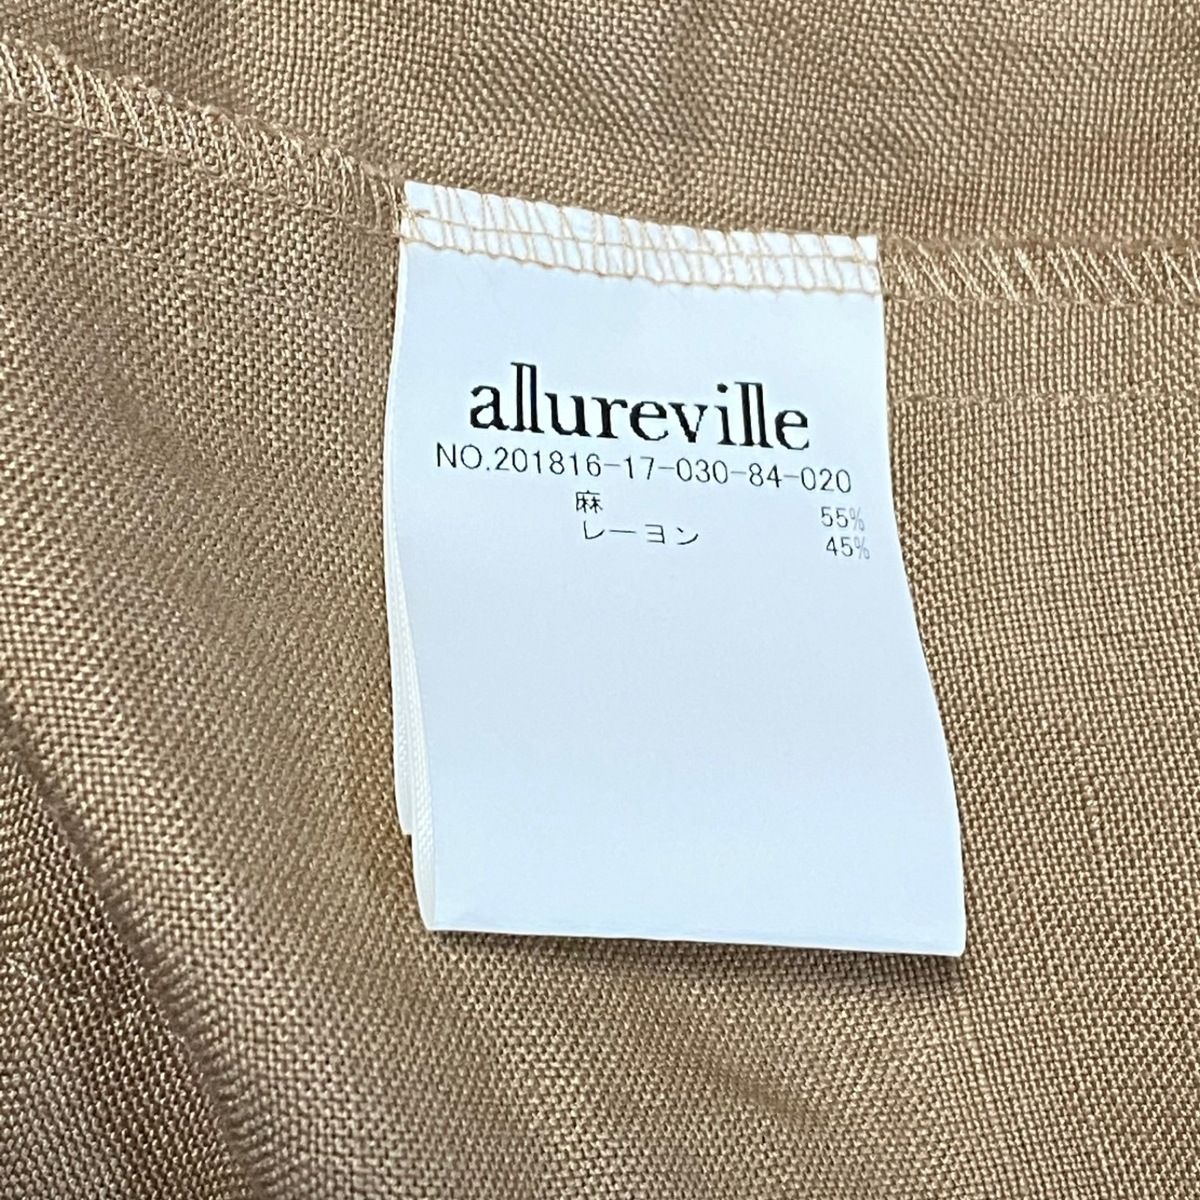 allureville(アルアバイル) コート サイズ2 M レディース - ライトブラウン 長袖/春/秋